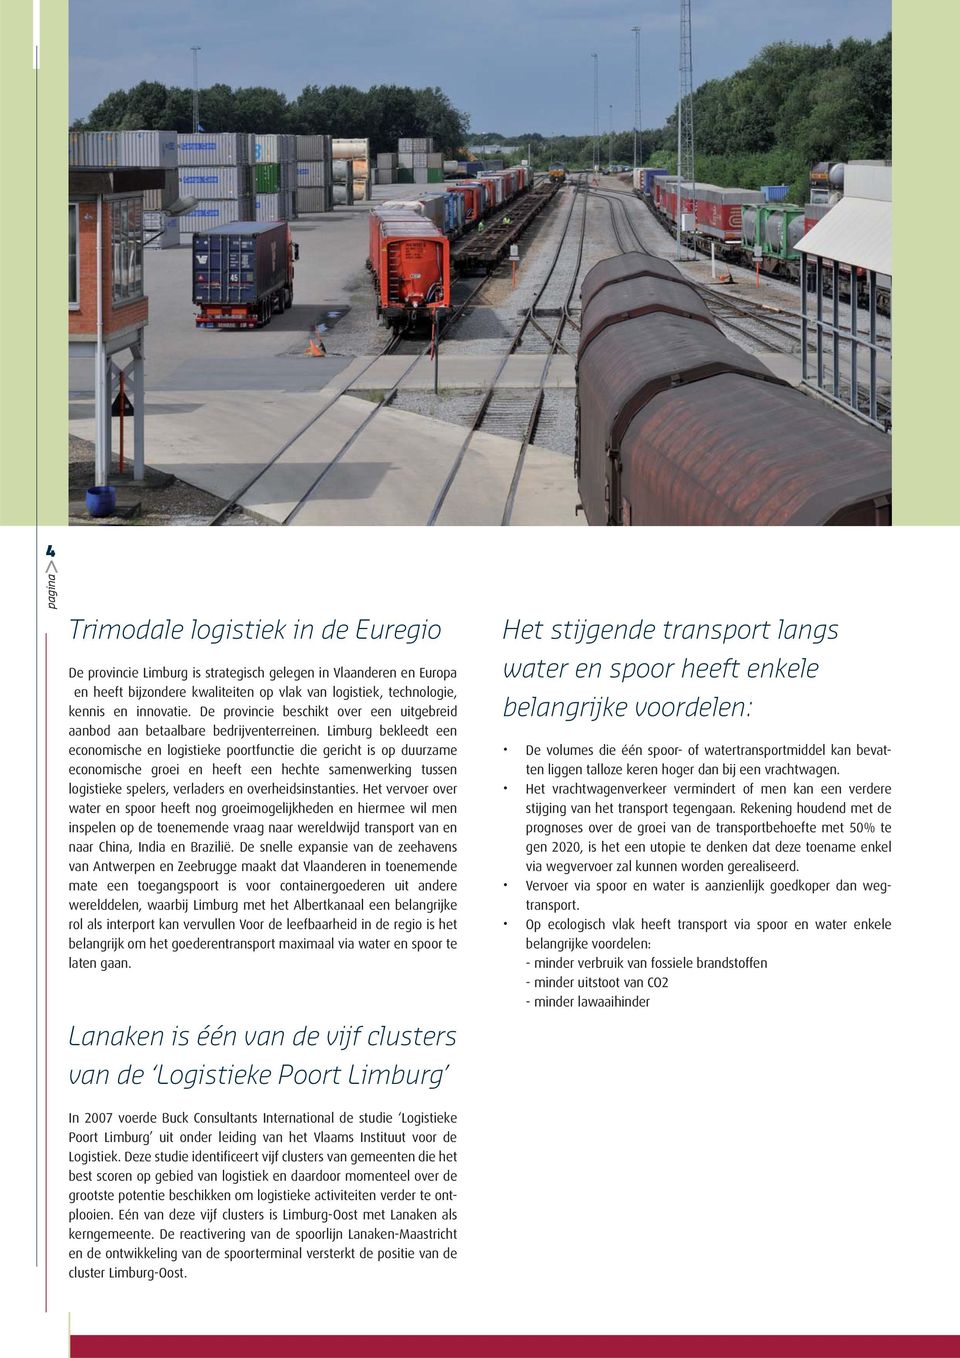 Limburg bekleedt een economische en logistieke poortfunctie die gericht is op duurzame economische groei en heeft een hechte samenwerking tussen logistieke spelers, verladers en overheidsinstanties.